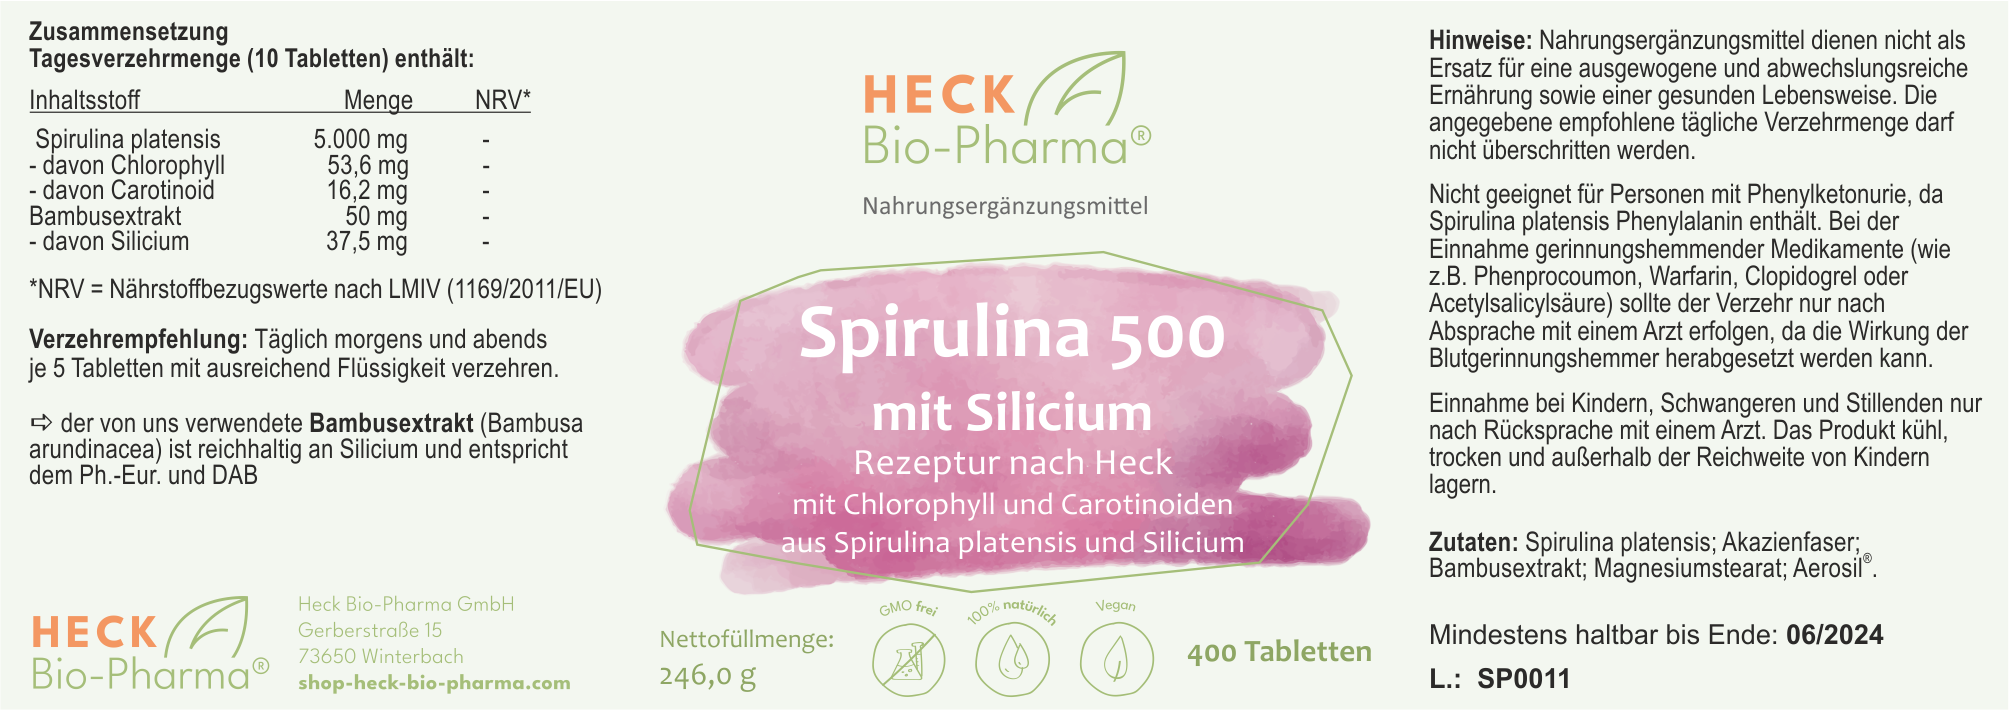 Spirulina 500 mit Silicium, 400 Tabletten